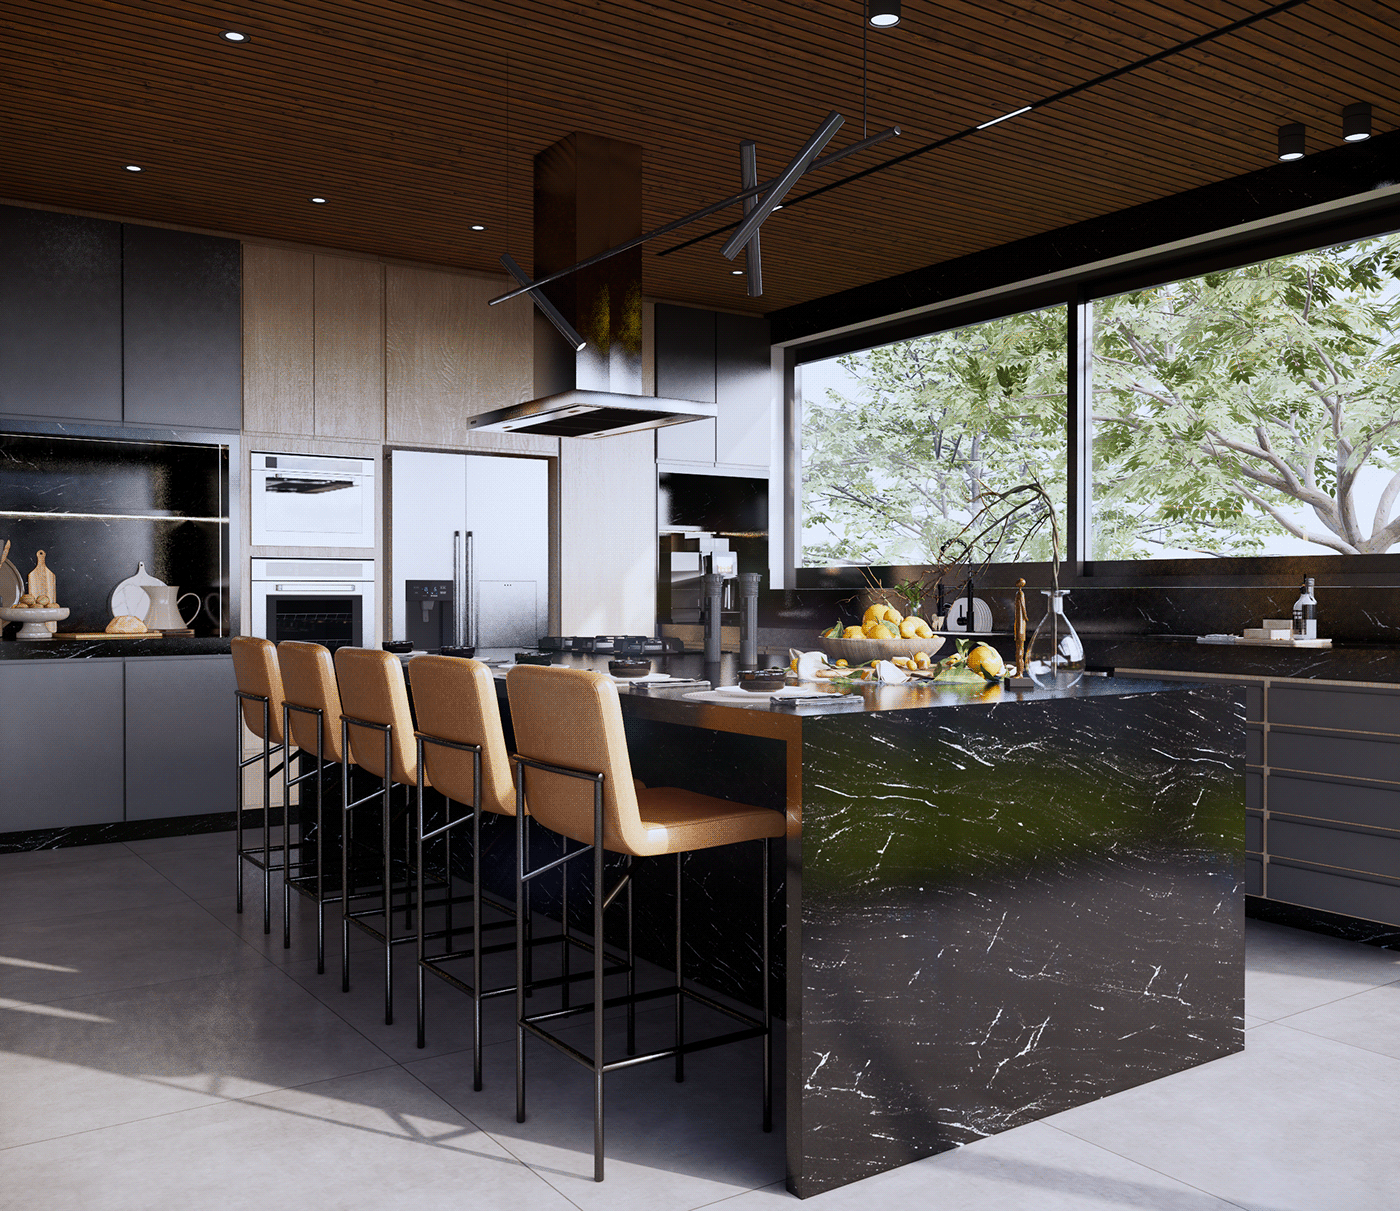 dinner cozinha kitchen Brasil interior design  enscape wood concrete architecture floresta